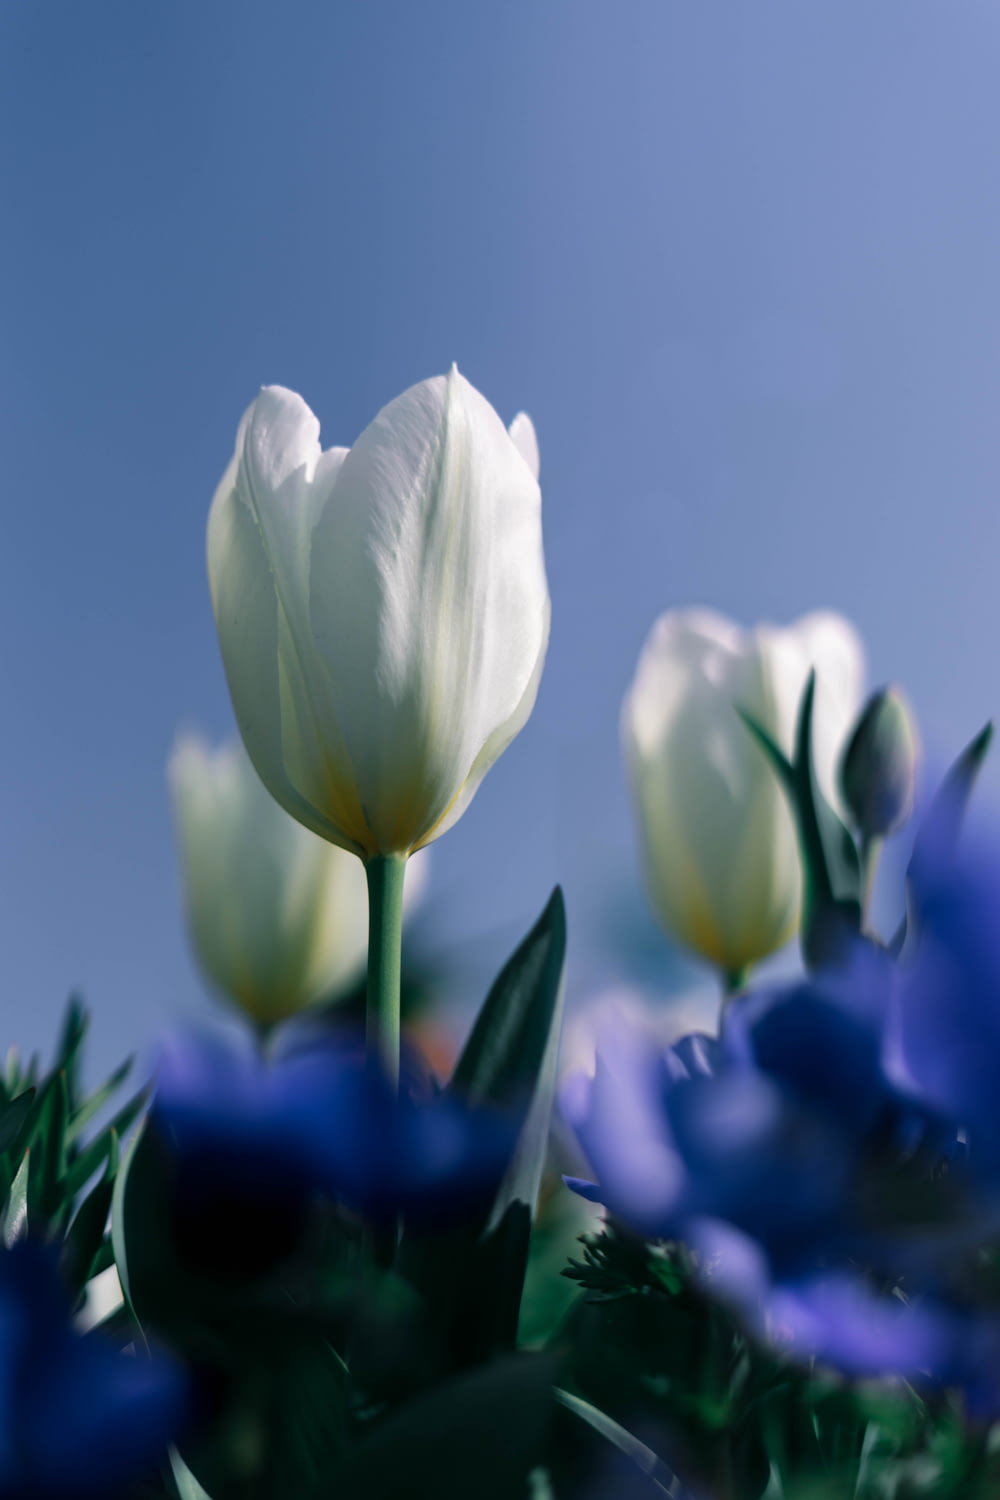 fiori di tulipano bianco in fotografia ravvicinata